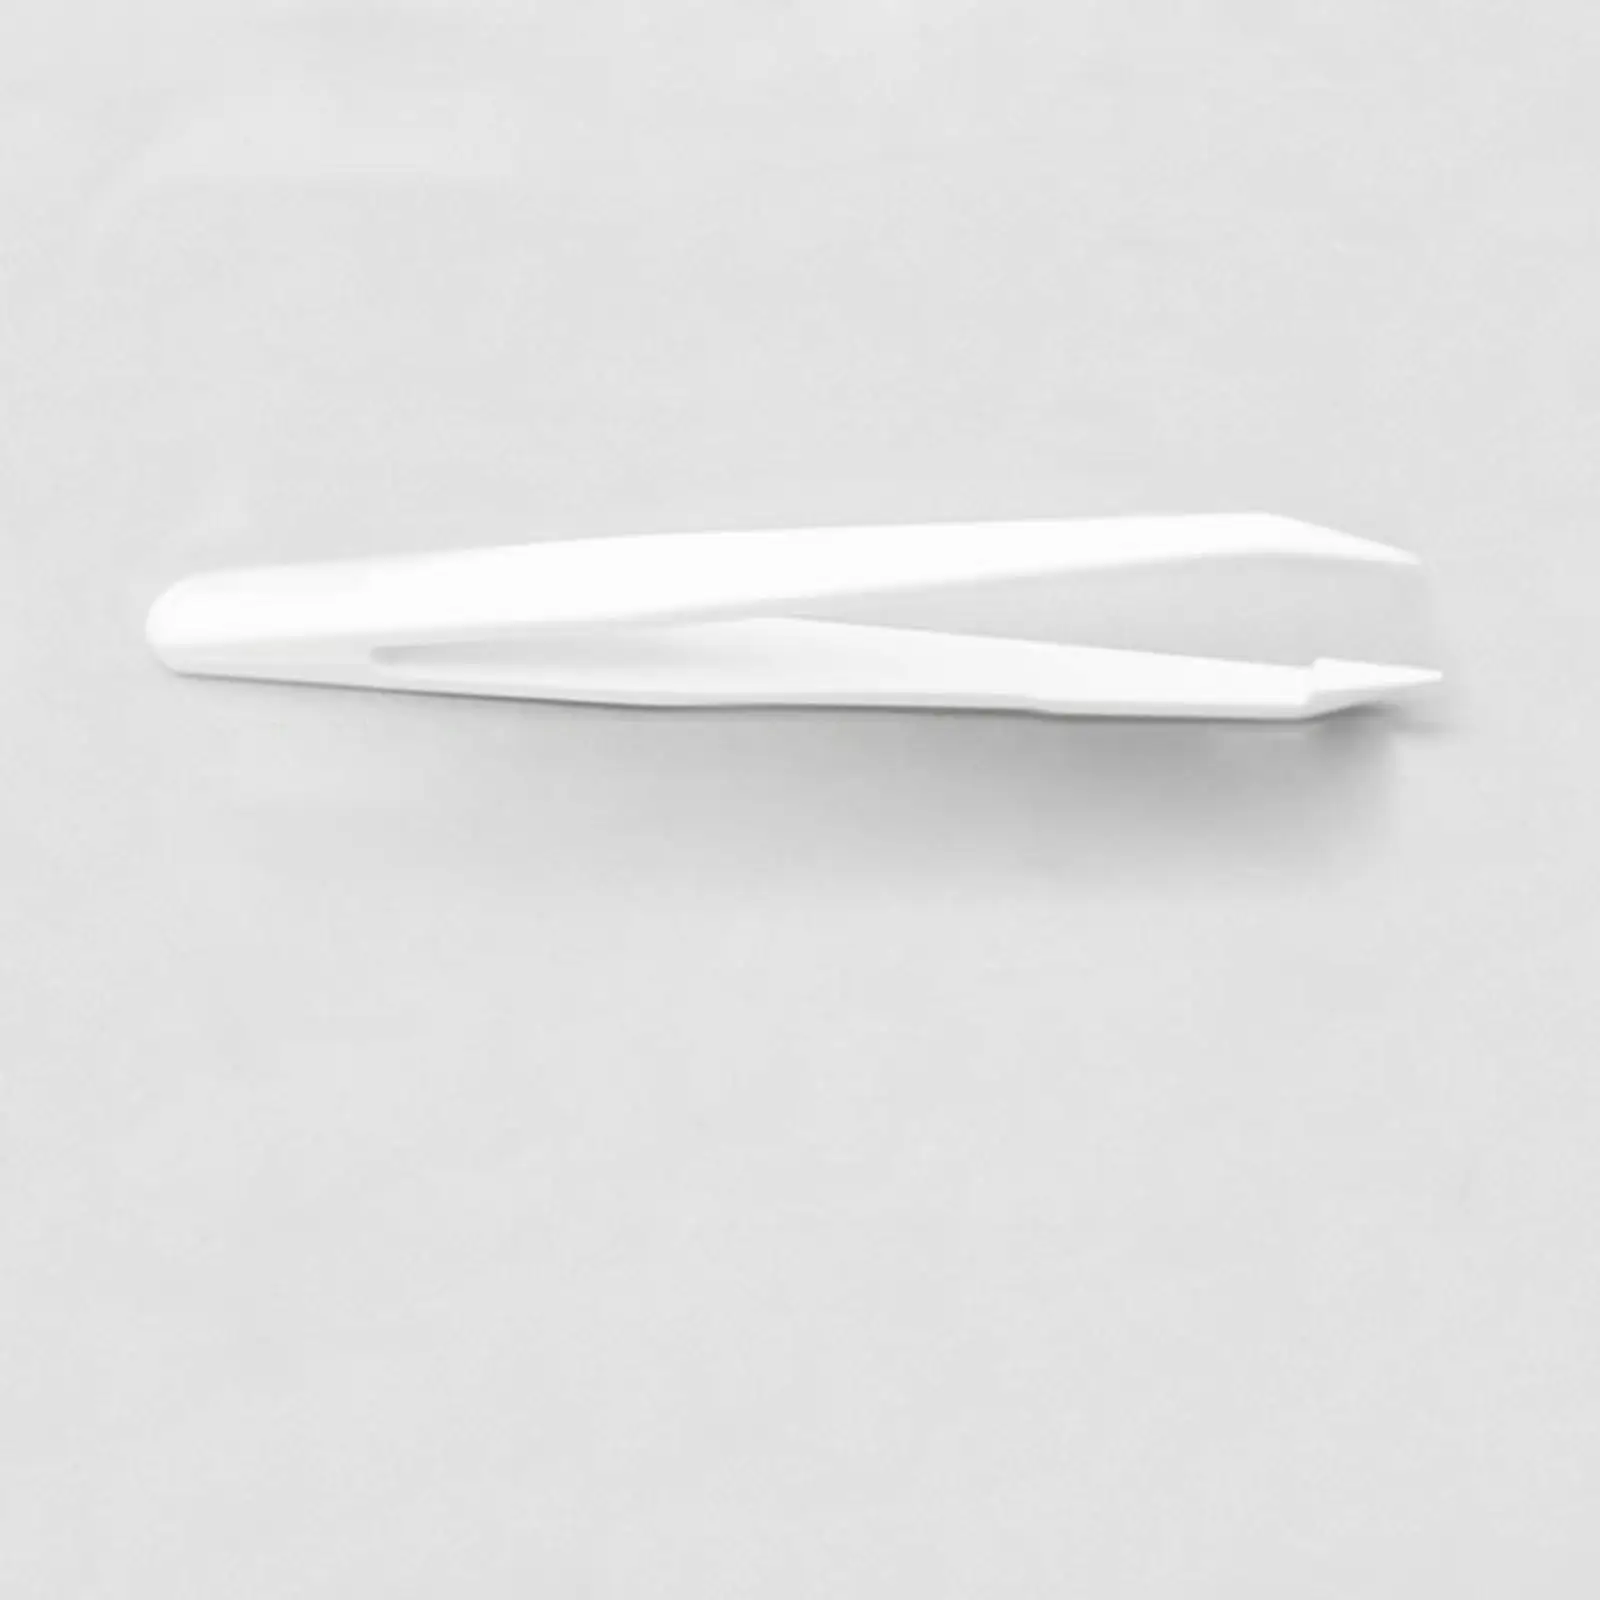 2 ADET 12 cm Uzunluk Beyaz Künt uçlu Forseps Western Blot WB Cımbız